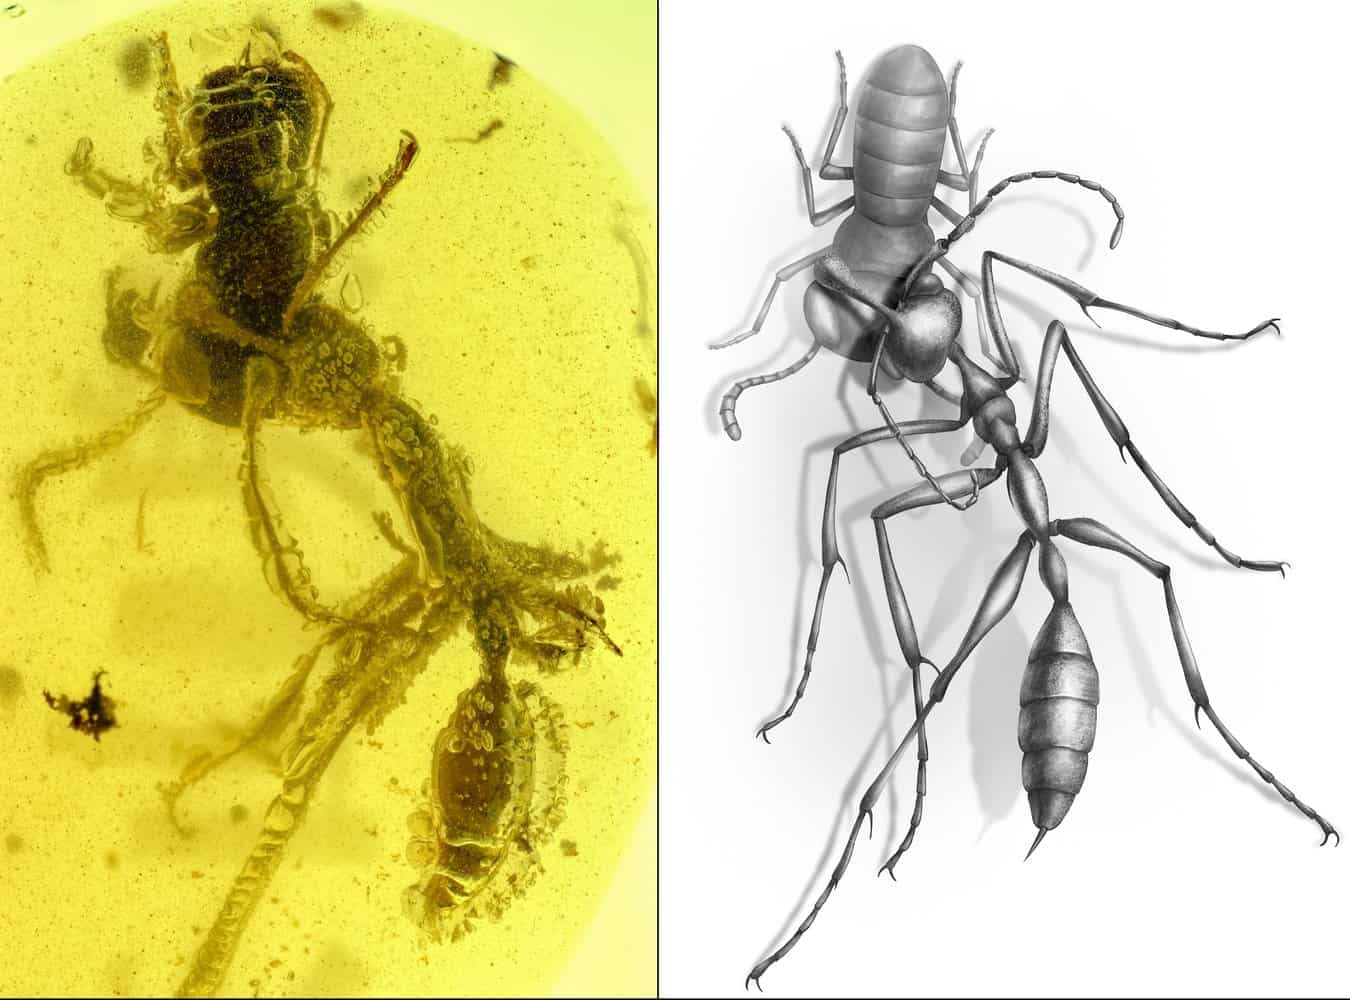 Доисторический адский муравей, застрявший в янтаре, мучает свою жертву уже 99 миллионов лет